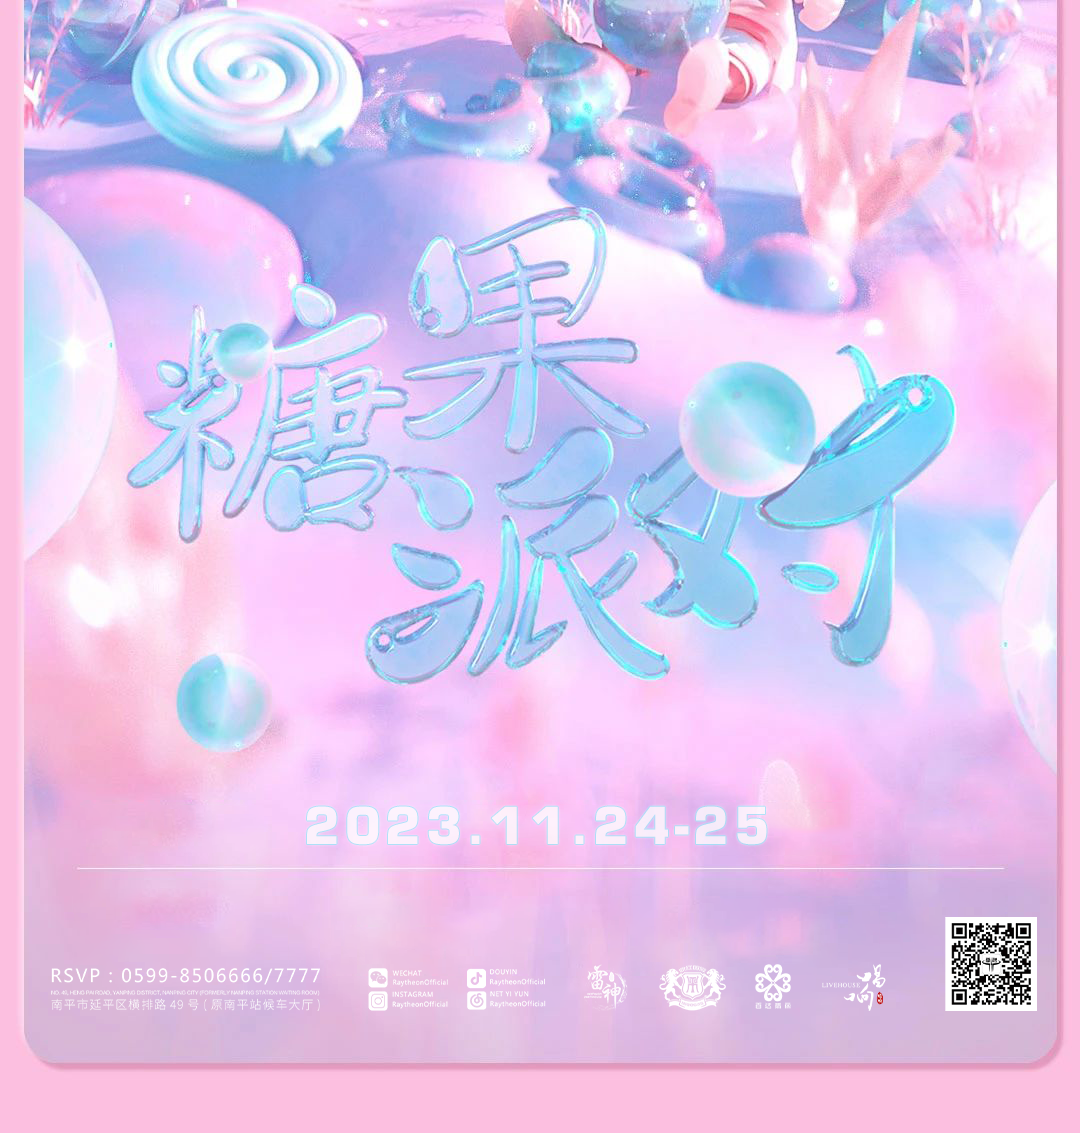 11.24-25丨【糖果派对】甜蜜糖果 唤醒爱情-南平雷神酒吧/Raytheon